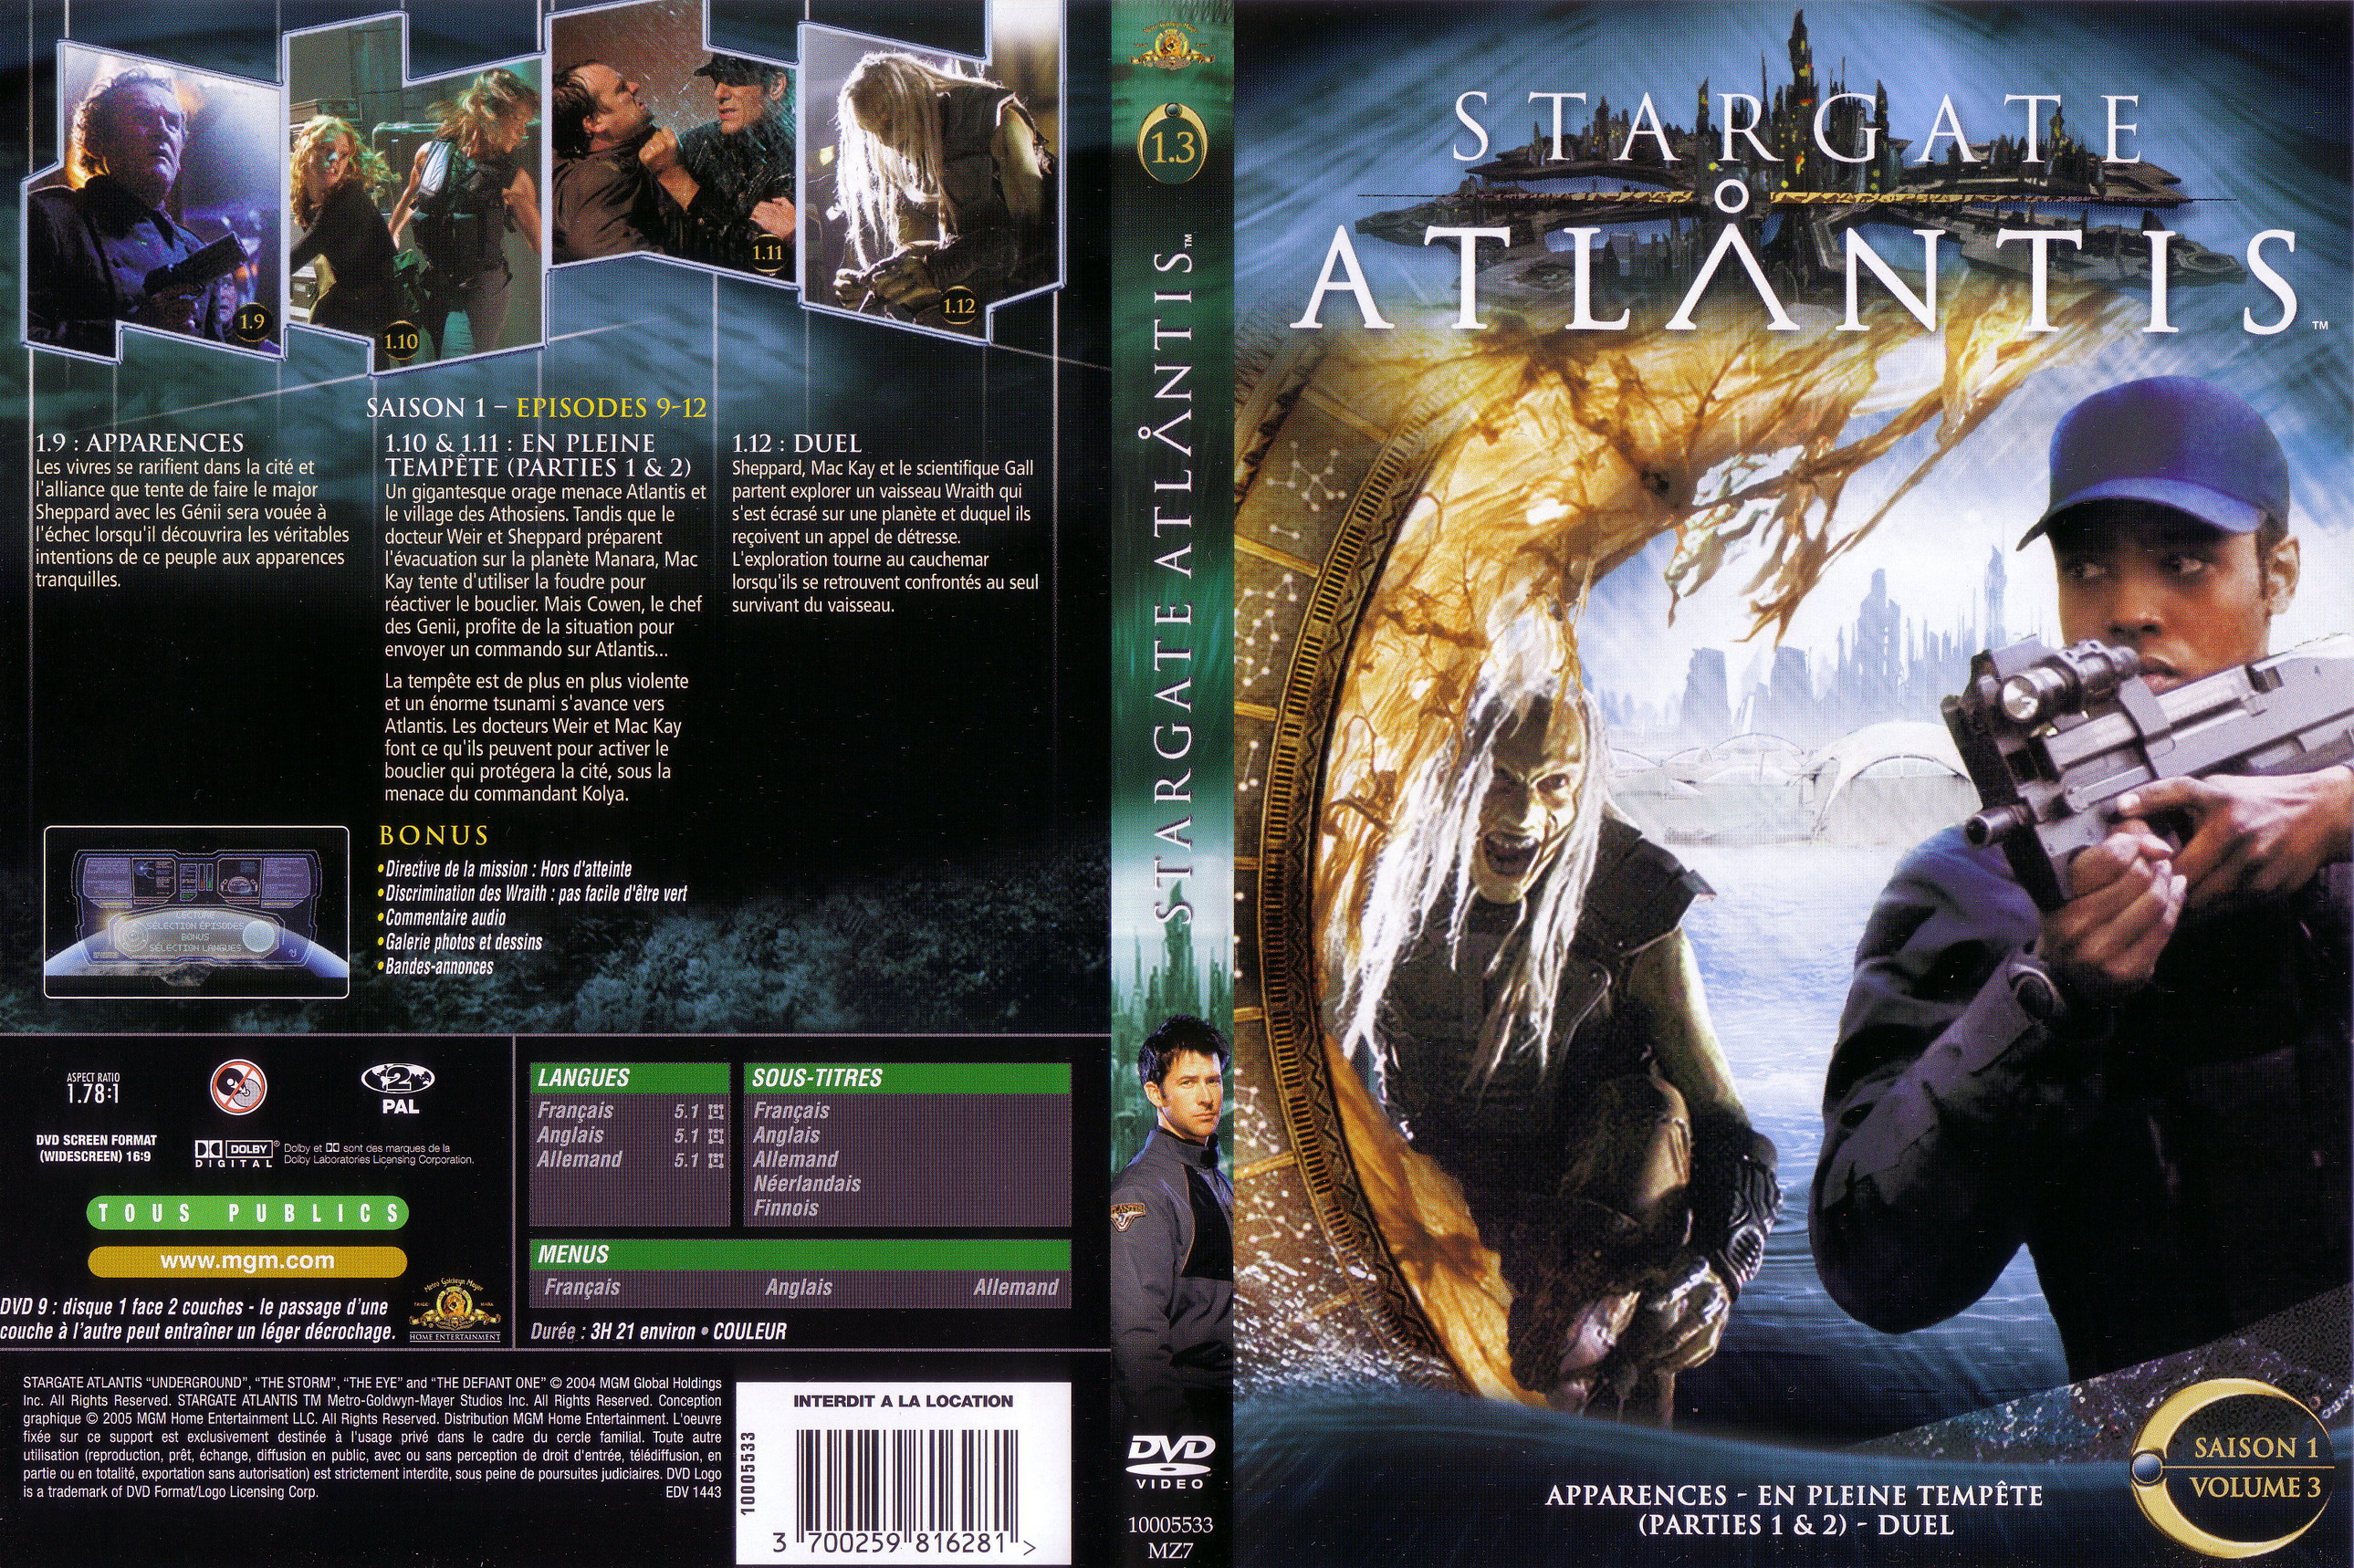 Jaquette DVD Stargate Atlantis saison 1 vol 3